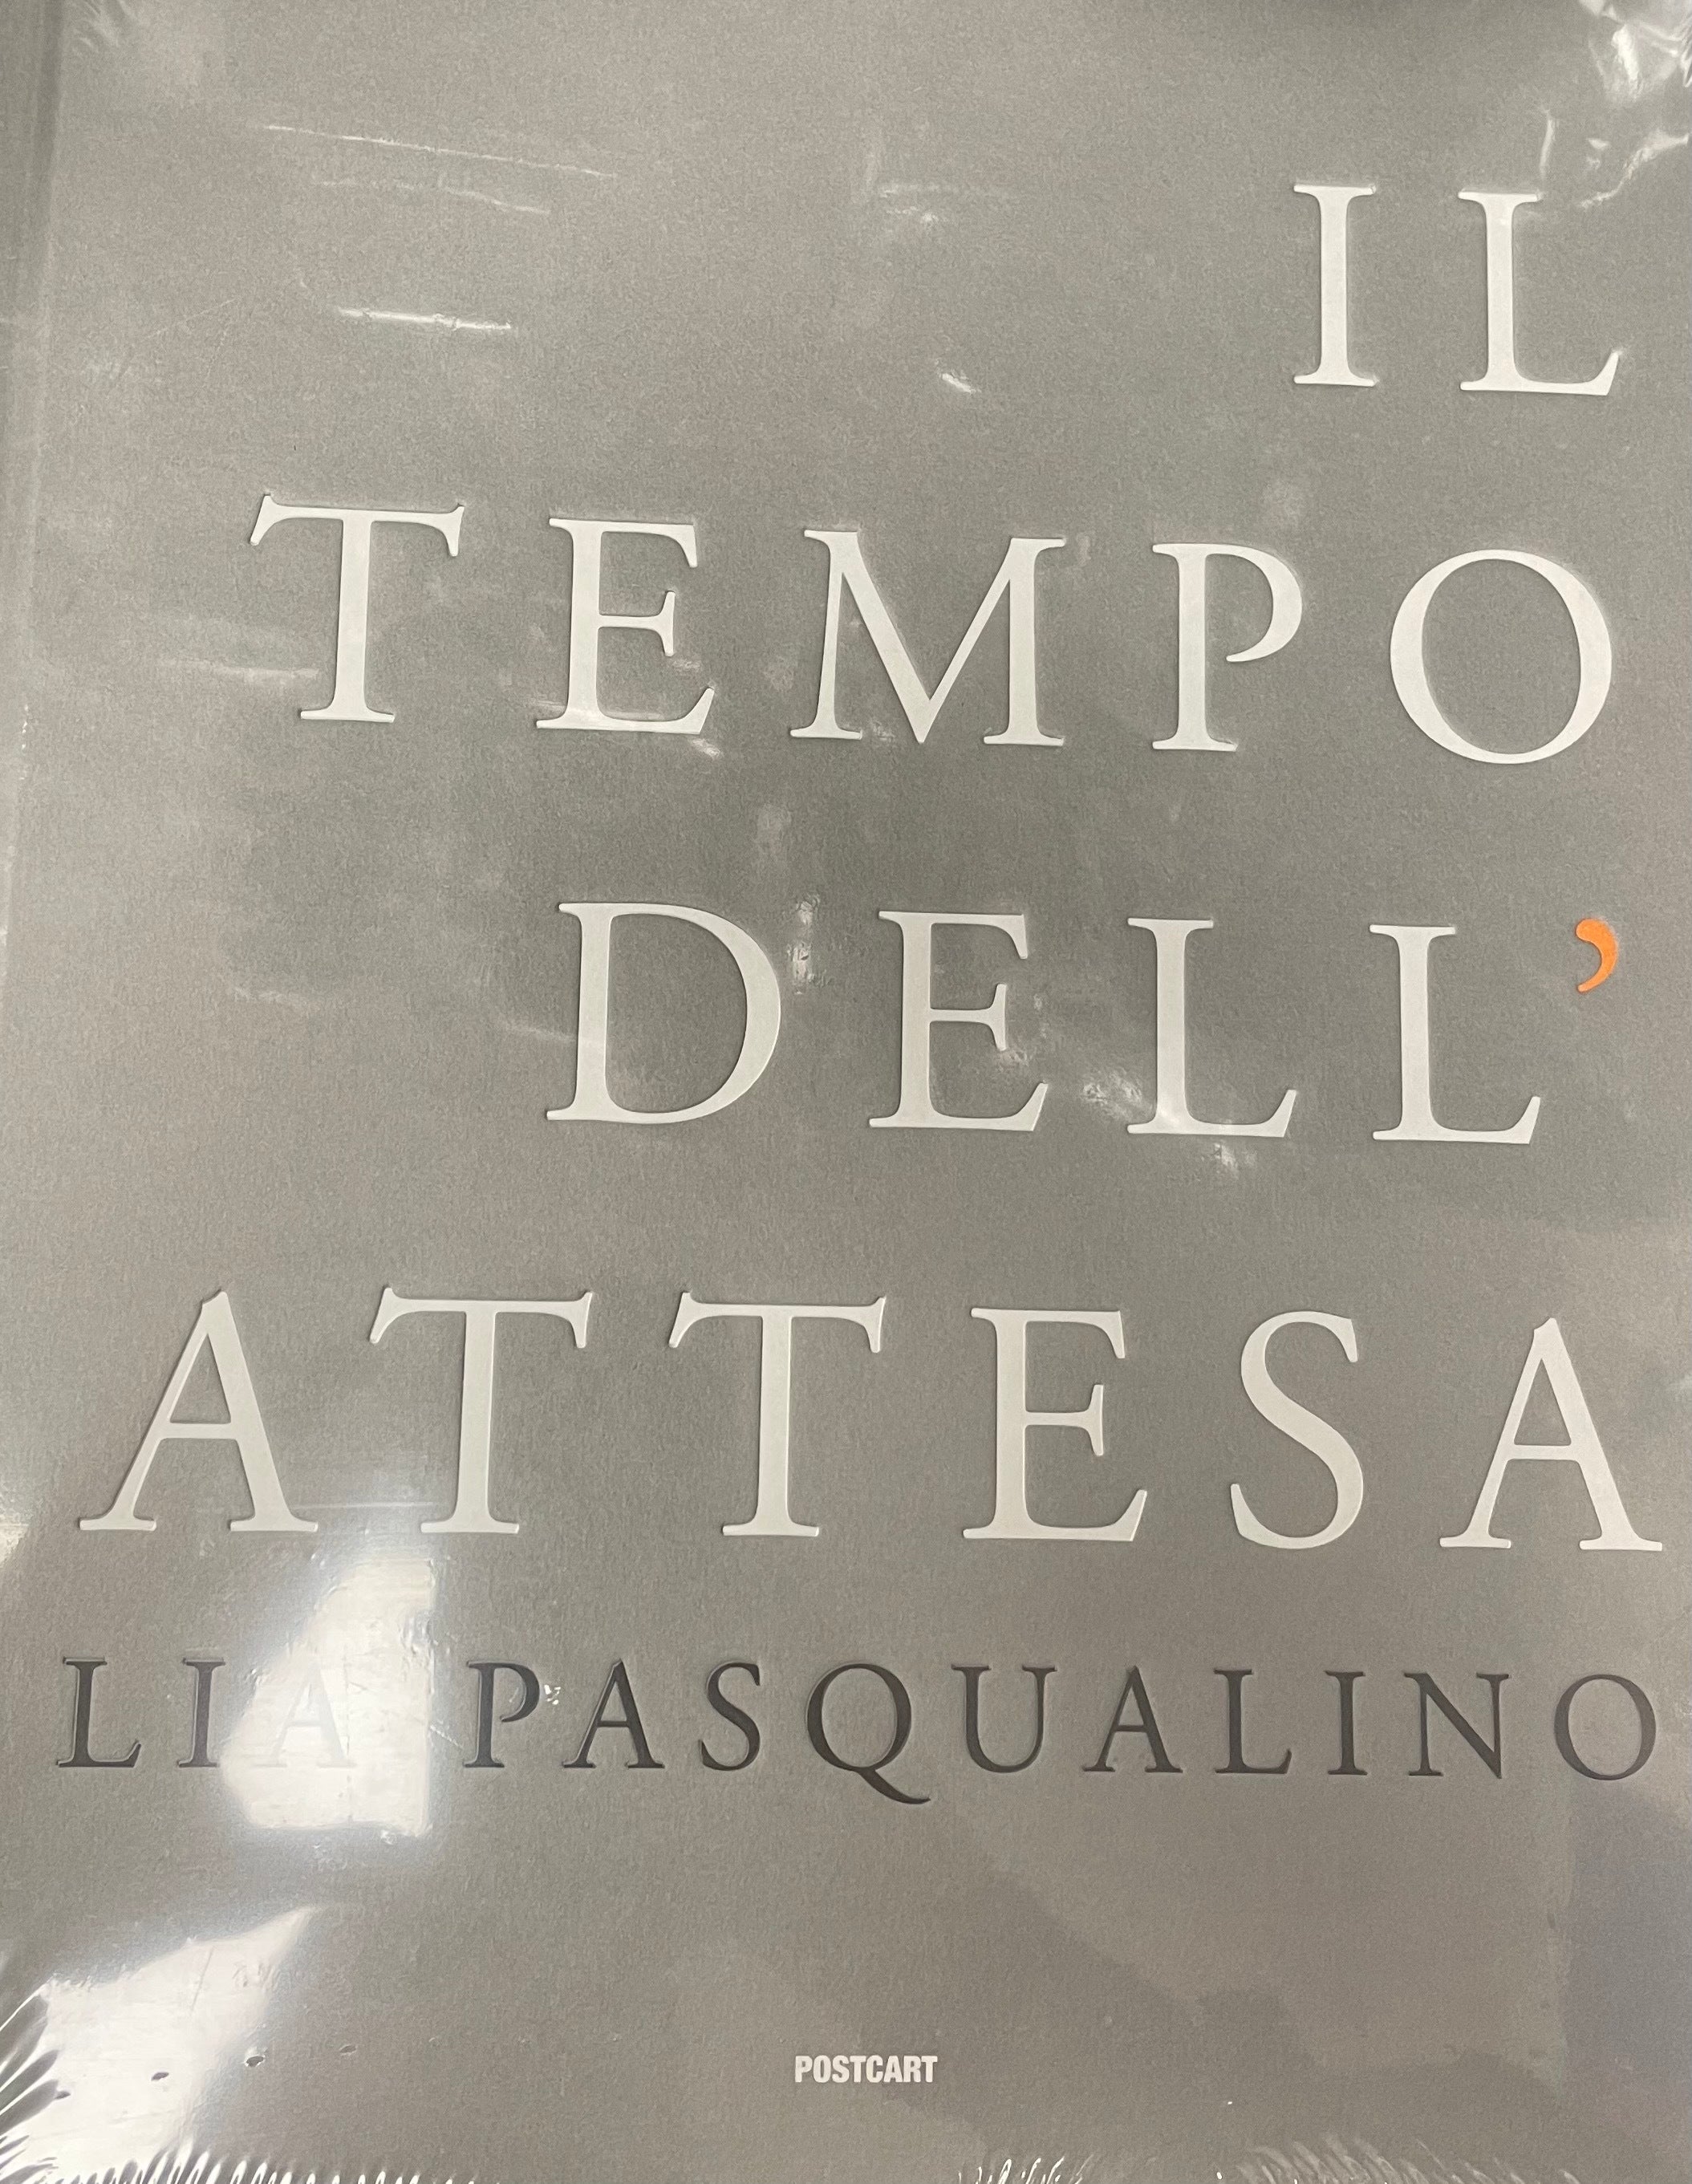 Il tempo dell'attesa Lia Pasqualino